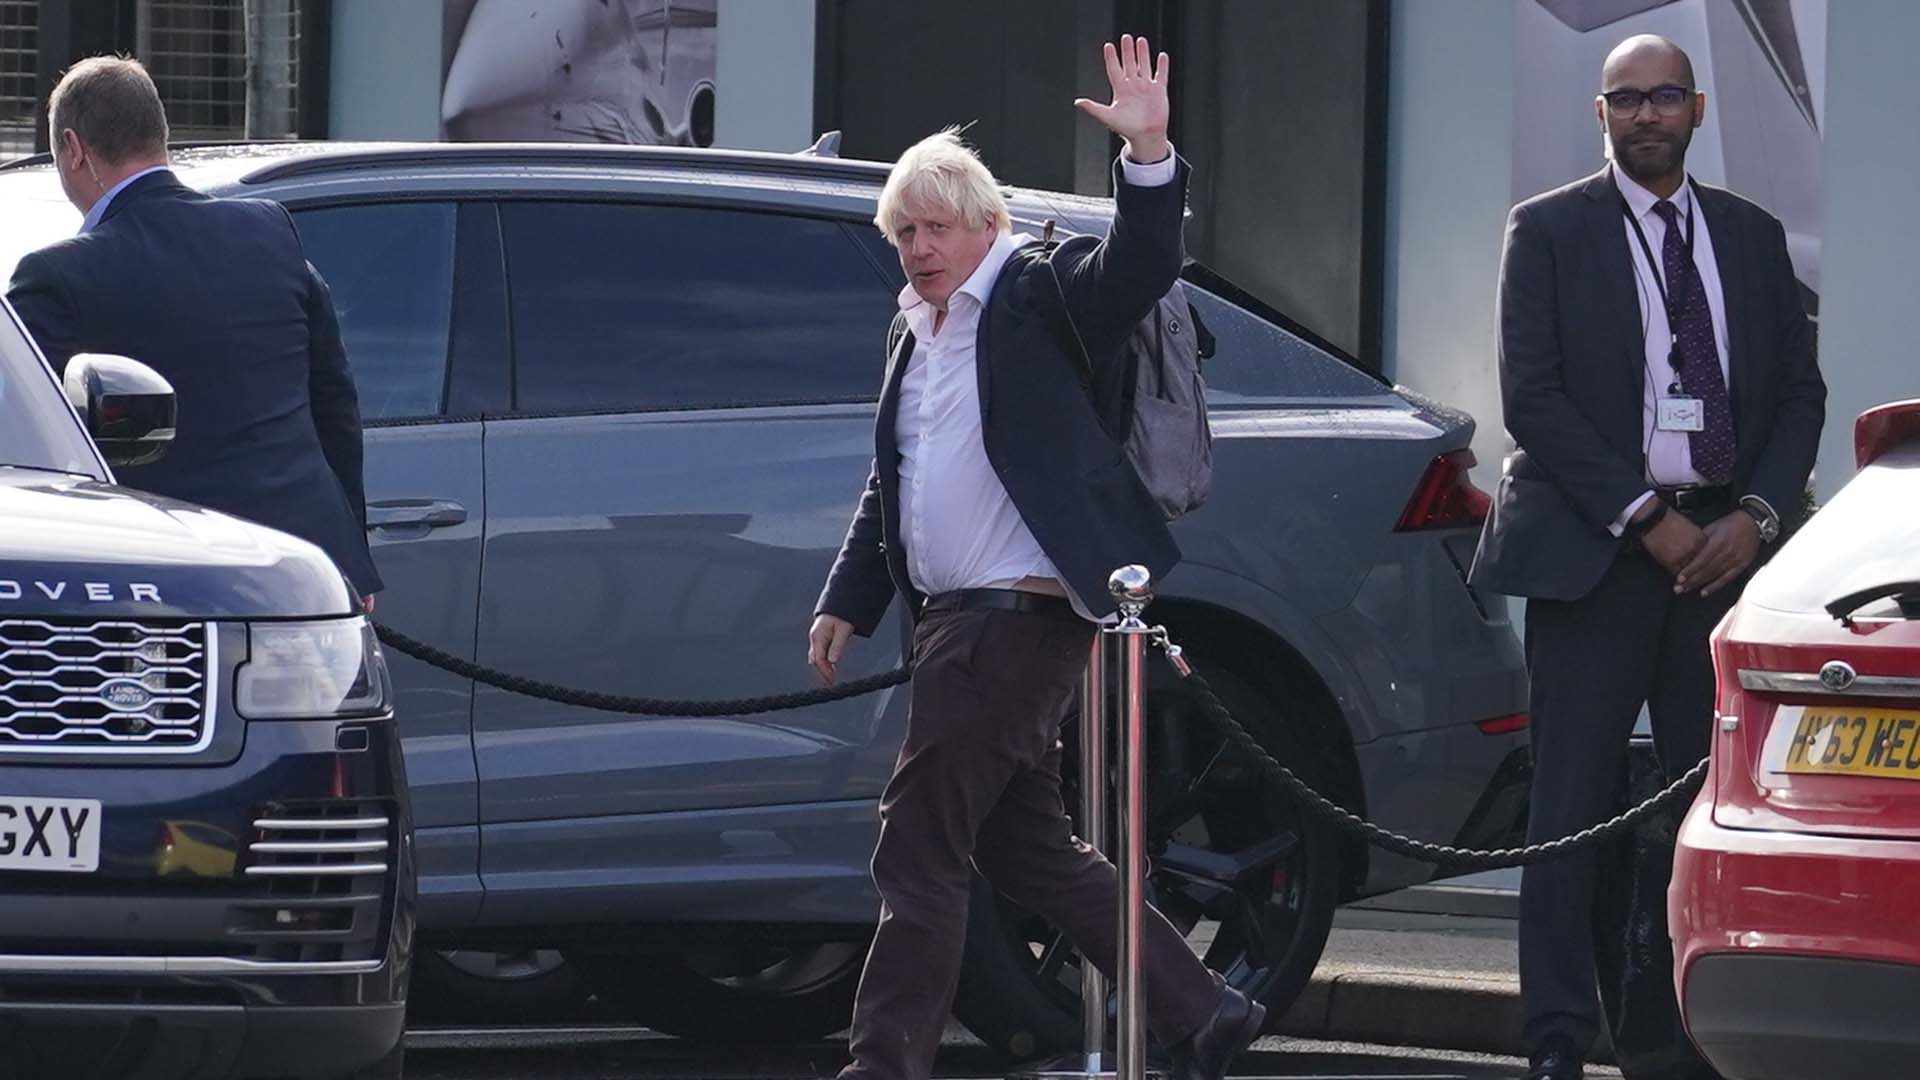 L'ancien premier ministre Boris Johnson arrive à l'aéroport de Gatwick à Londres, après avoir pris un vol en provenance des Caraïbes, suite à la démission de Liz Truss, le 22 octobre 2022.